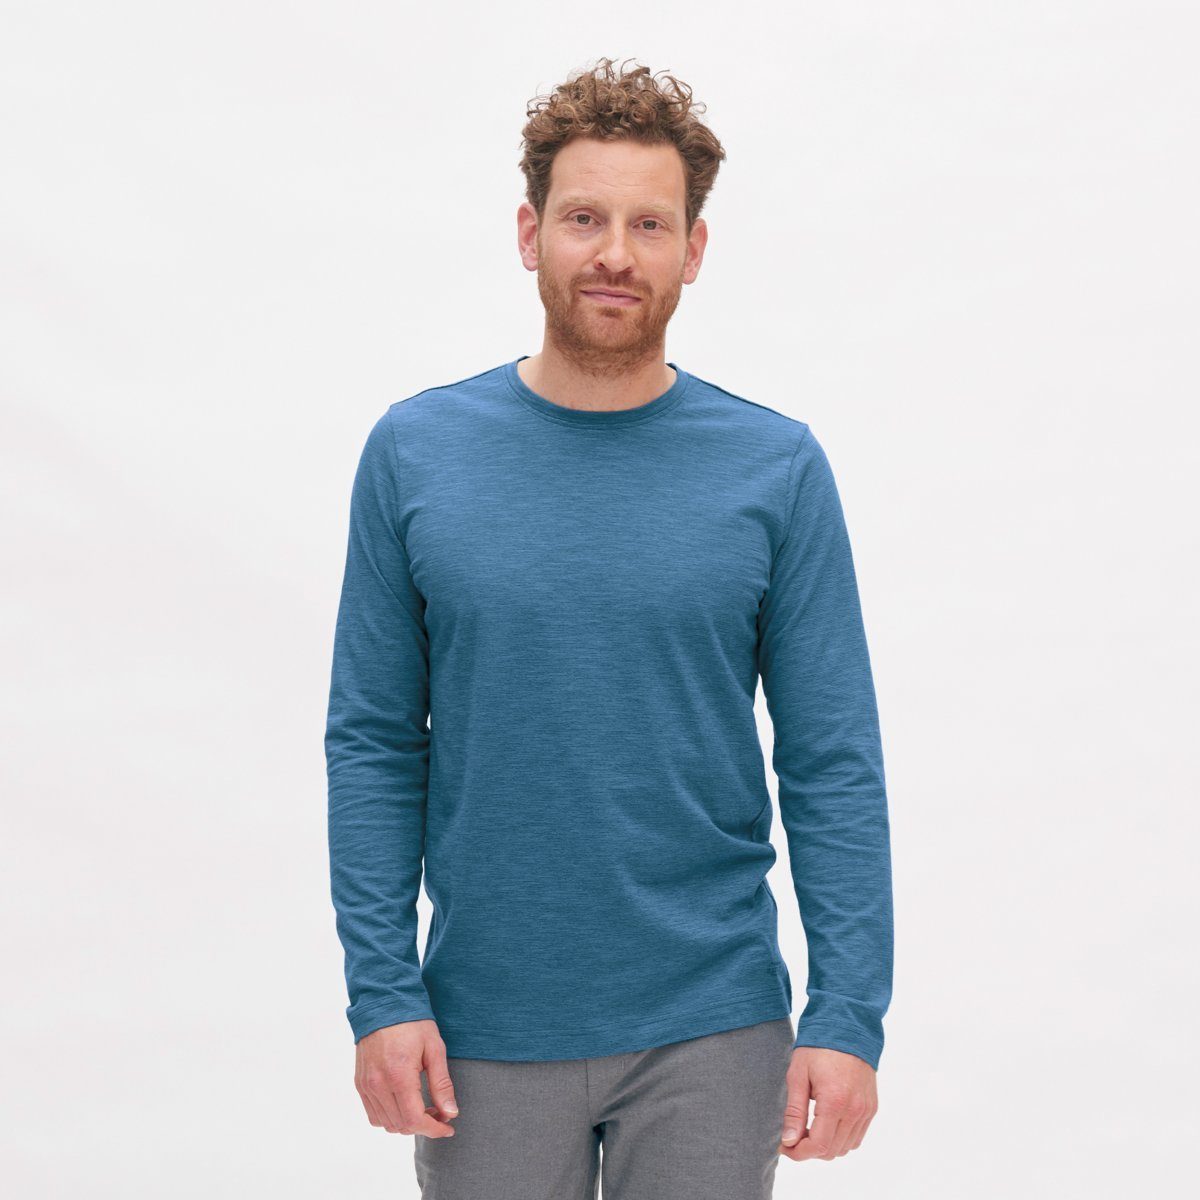 purer NOAH aus CRAFTS LIVING Brandheißes Retro Langarmshirt Blue Langarm-Shirt Bio-Baumwolle